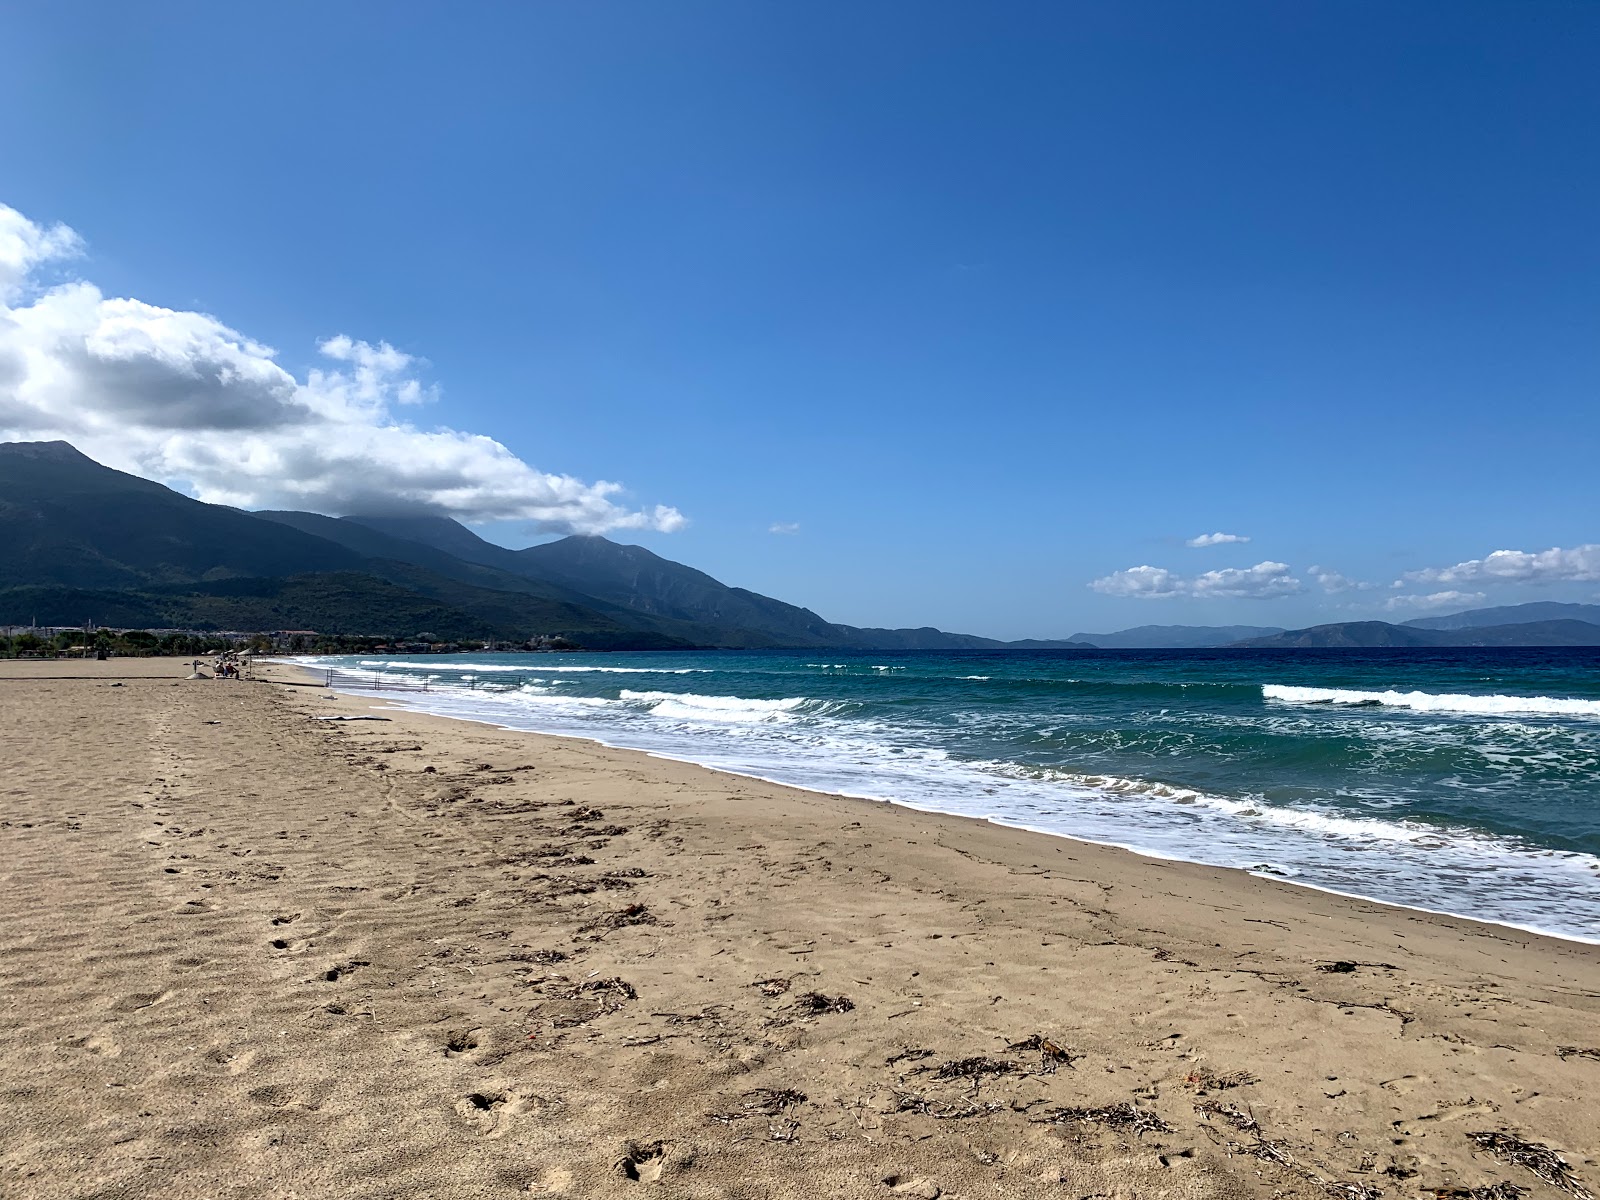 Kusadasi beach'in fotoğrafı parlak kum yüzey ile